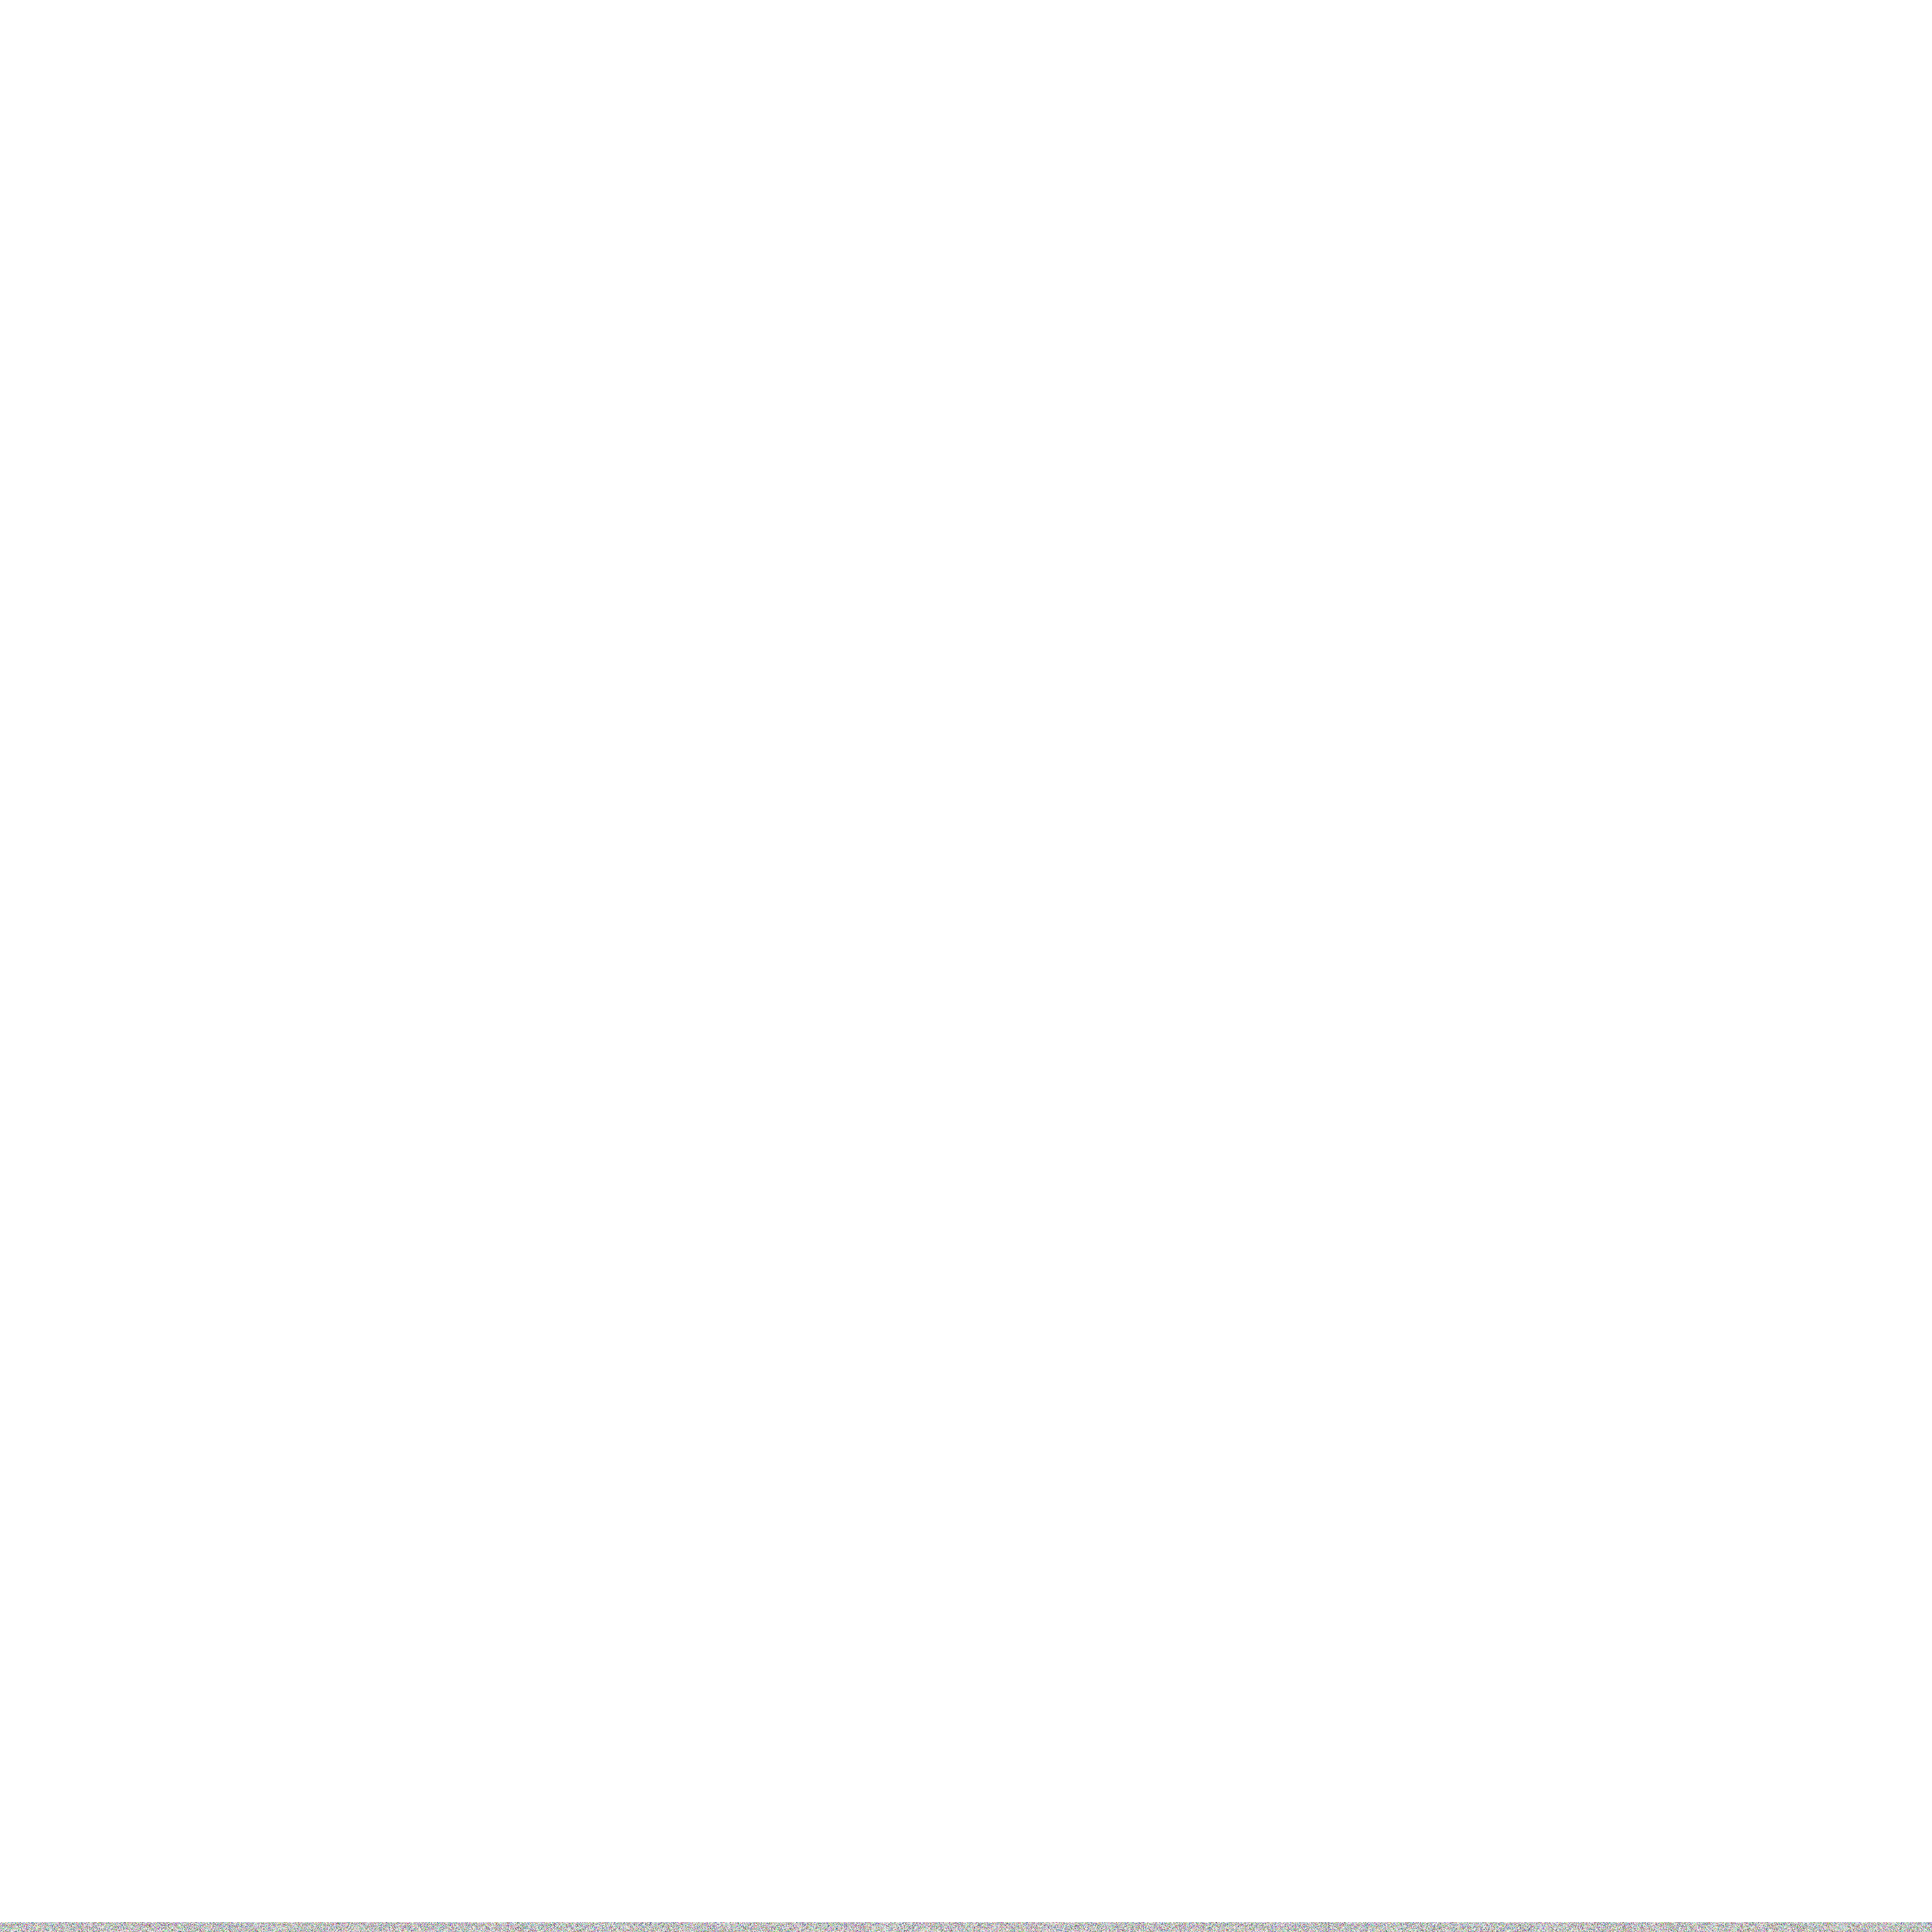 JOLO design